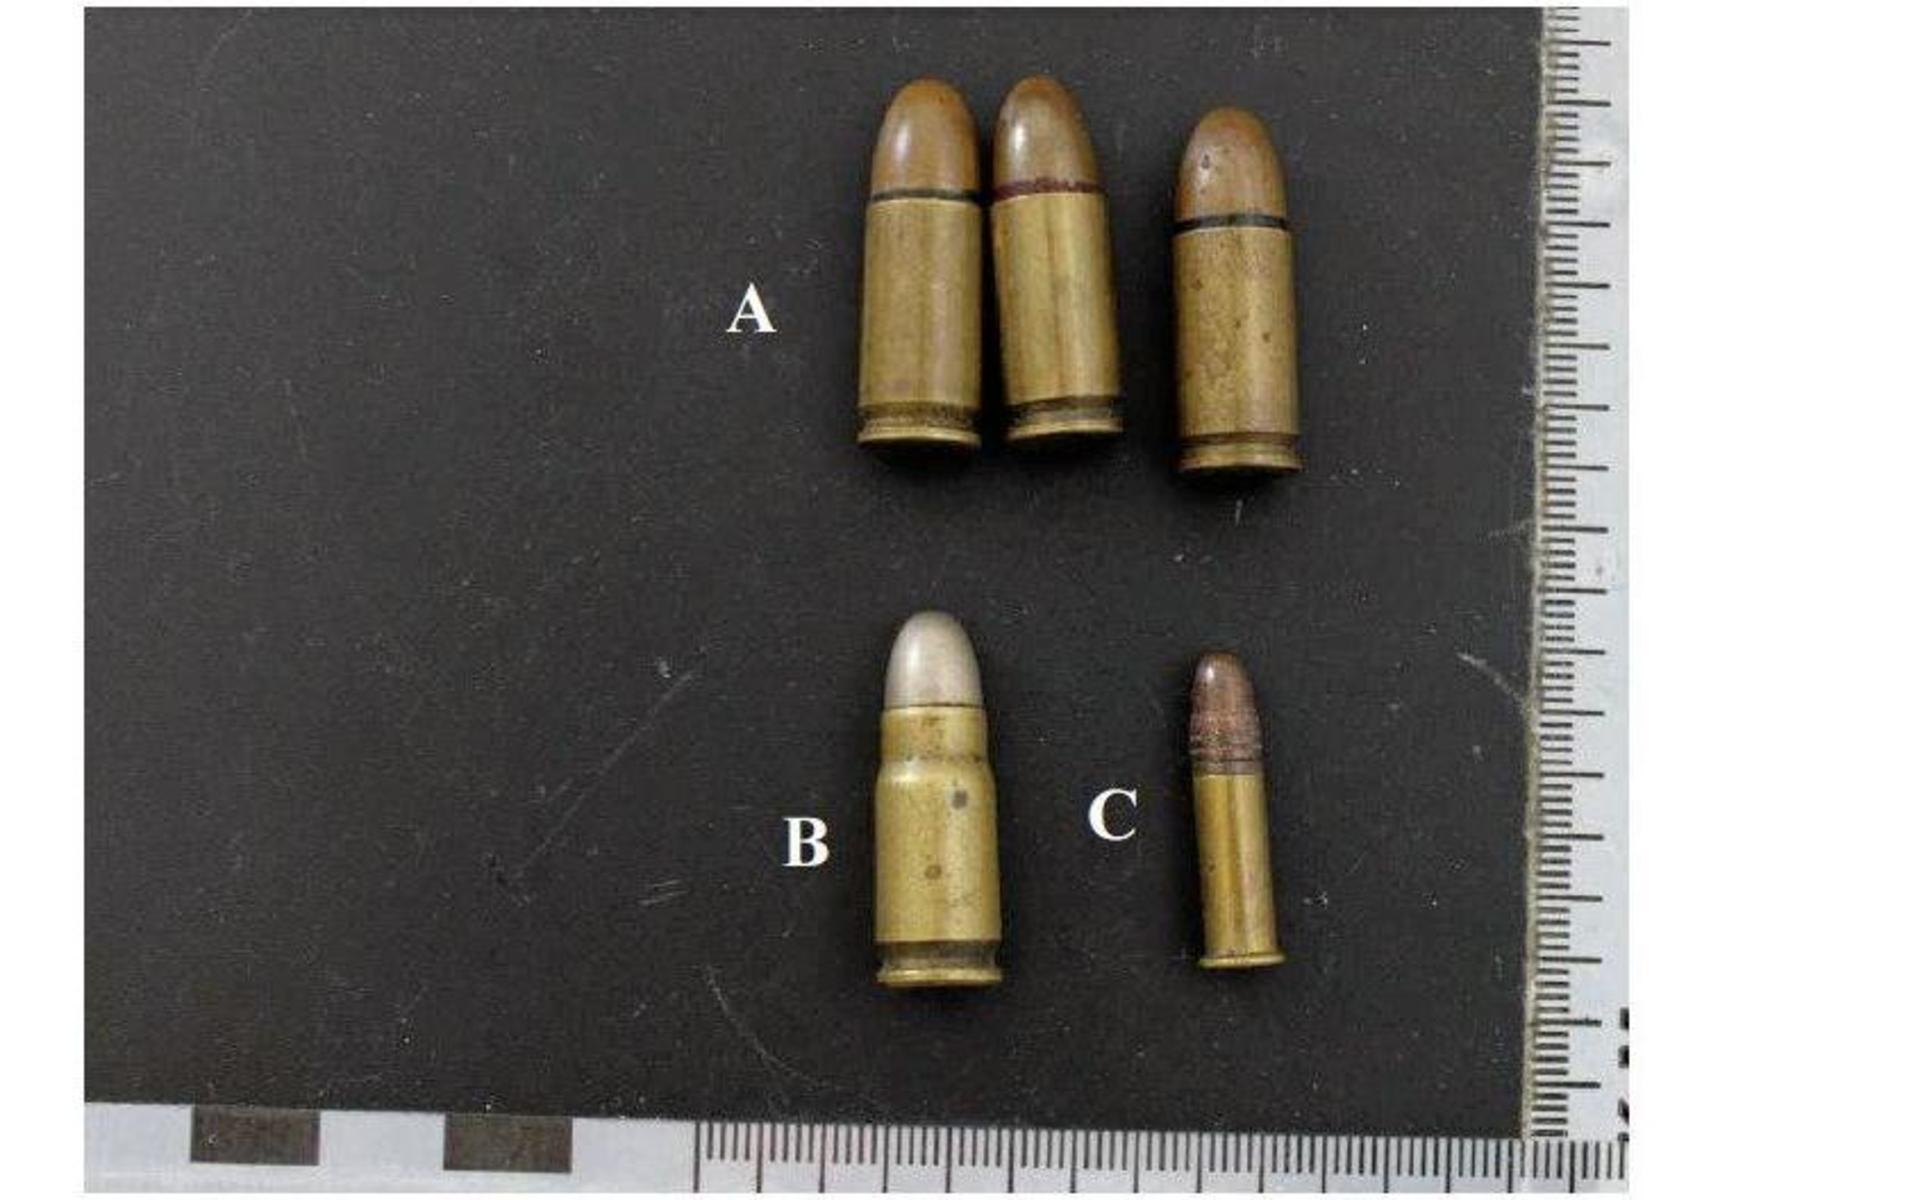 I bostaden fanns också ammunition som mannen inte hade tillstånd till. Det rörde sig om fem stycken skarpa patroner av olika kaliber.